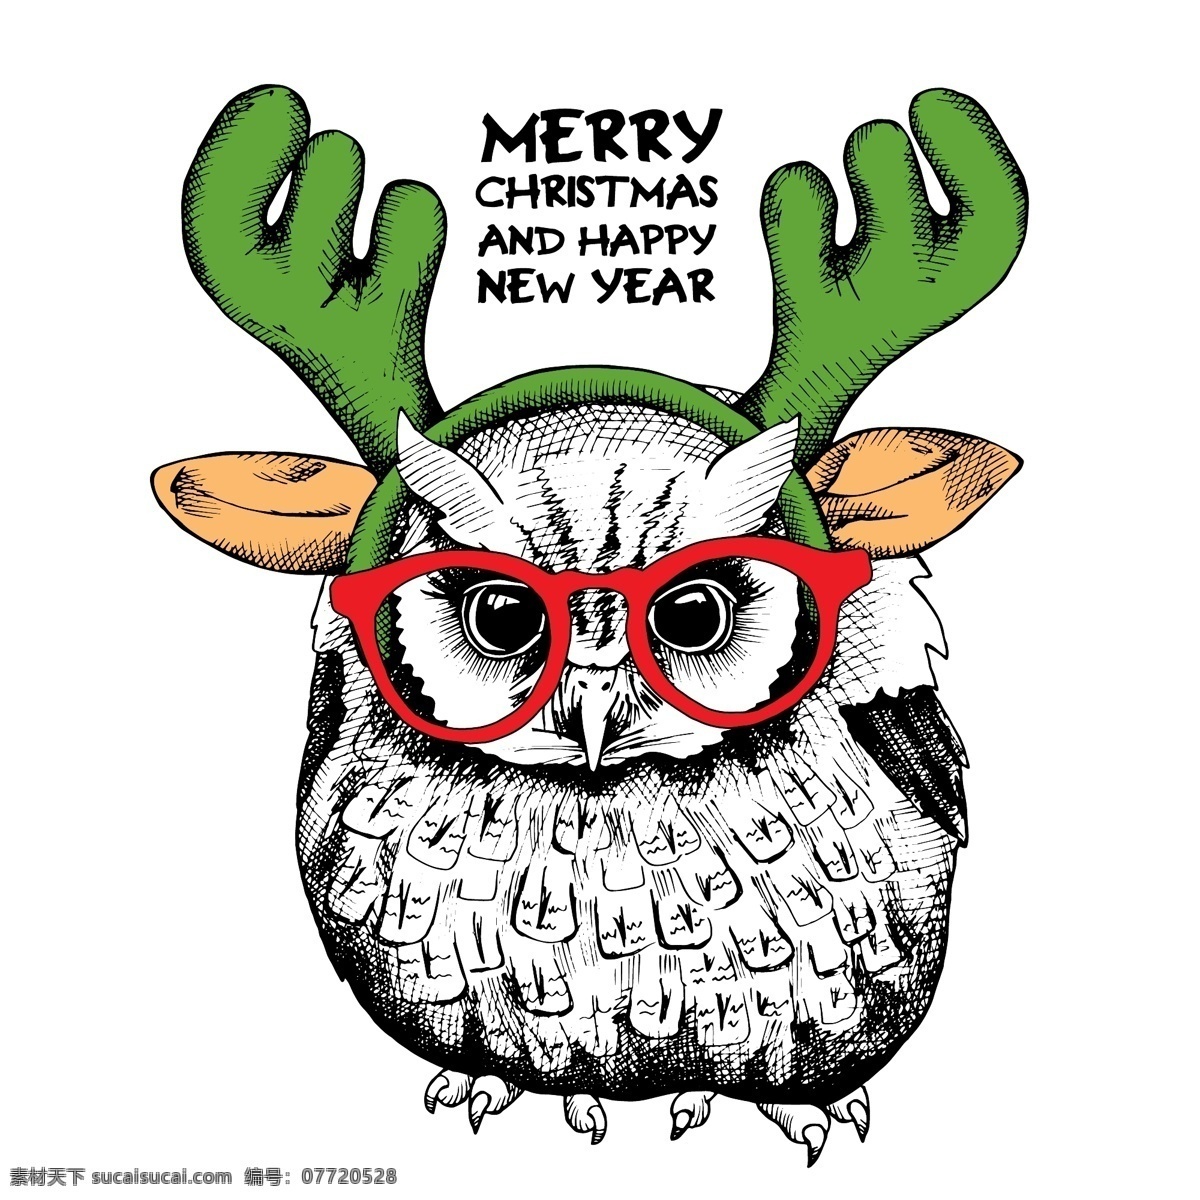 趣味 可爱 猫头鹰 插画 圣诞 眼镜